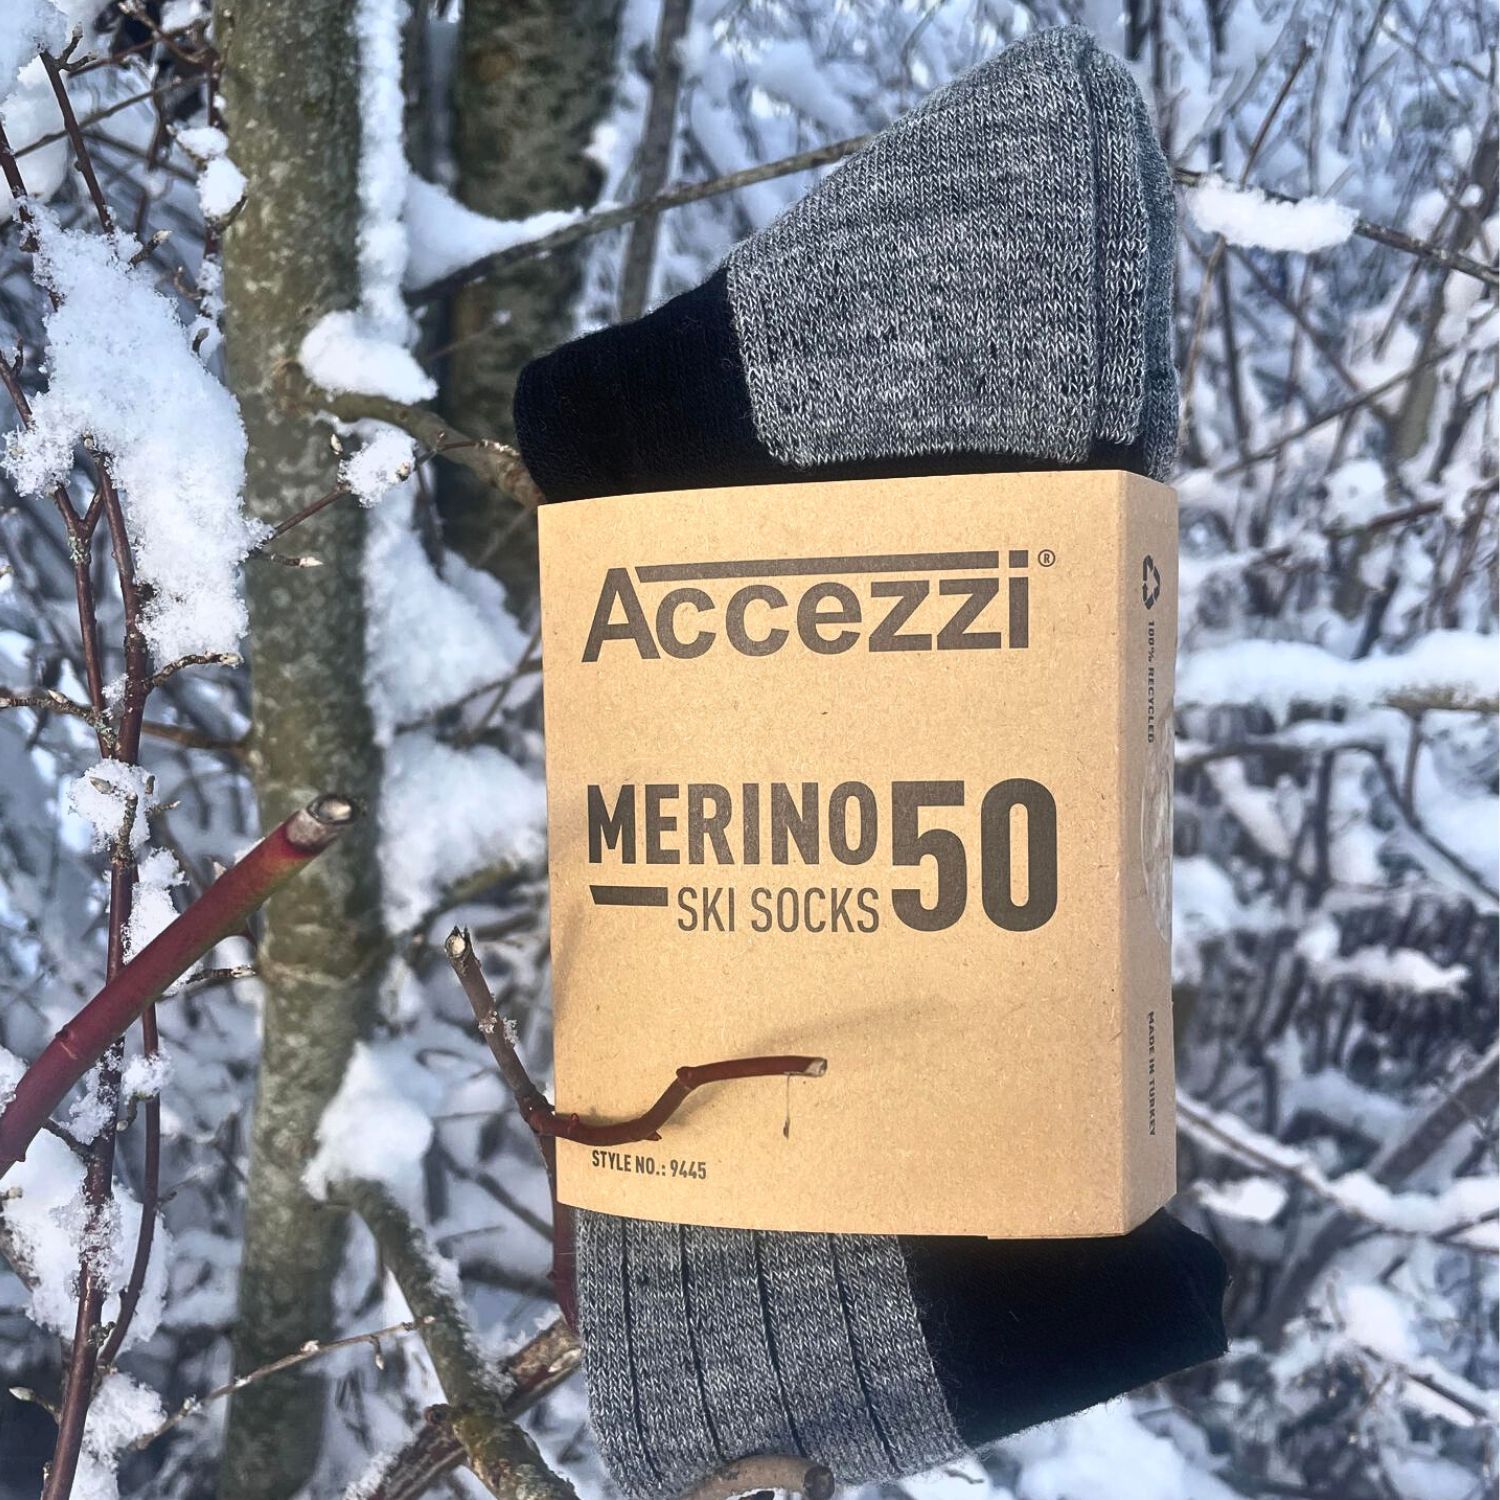 Accezzi Merino 50 ski socks, 2 pairs, black